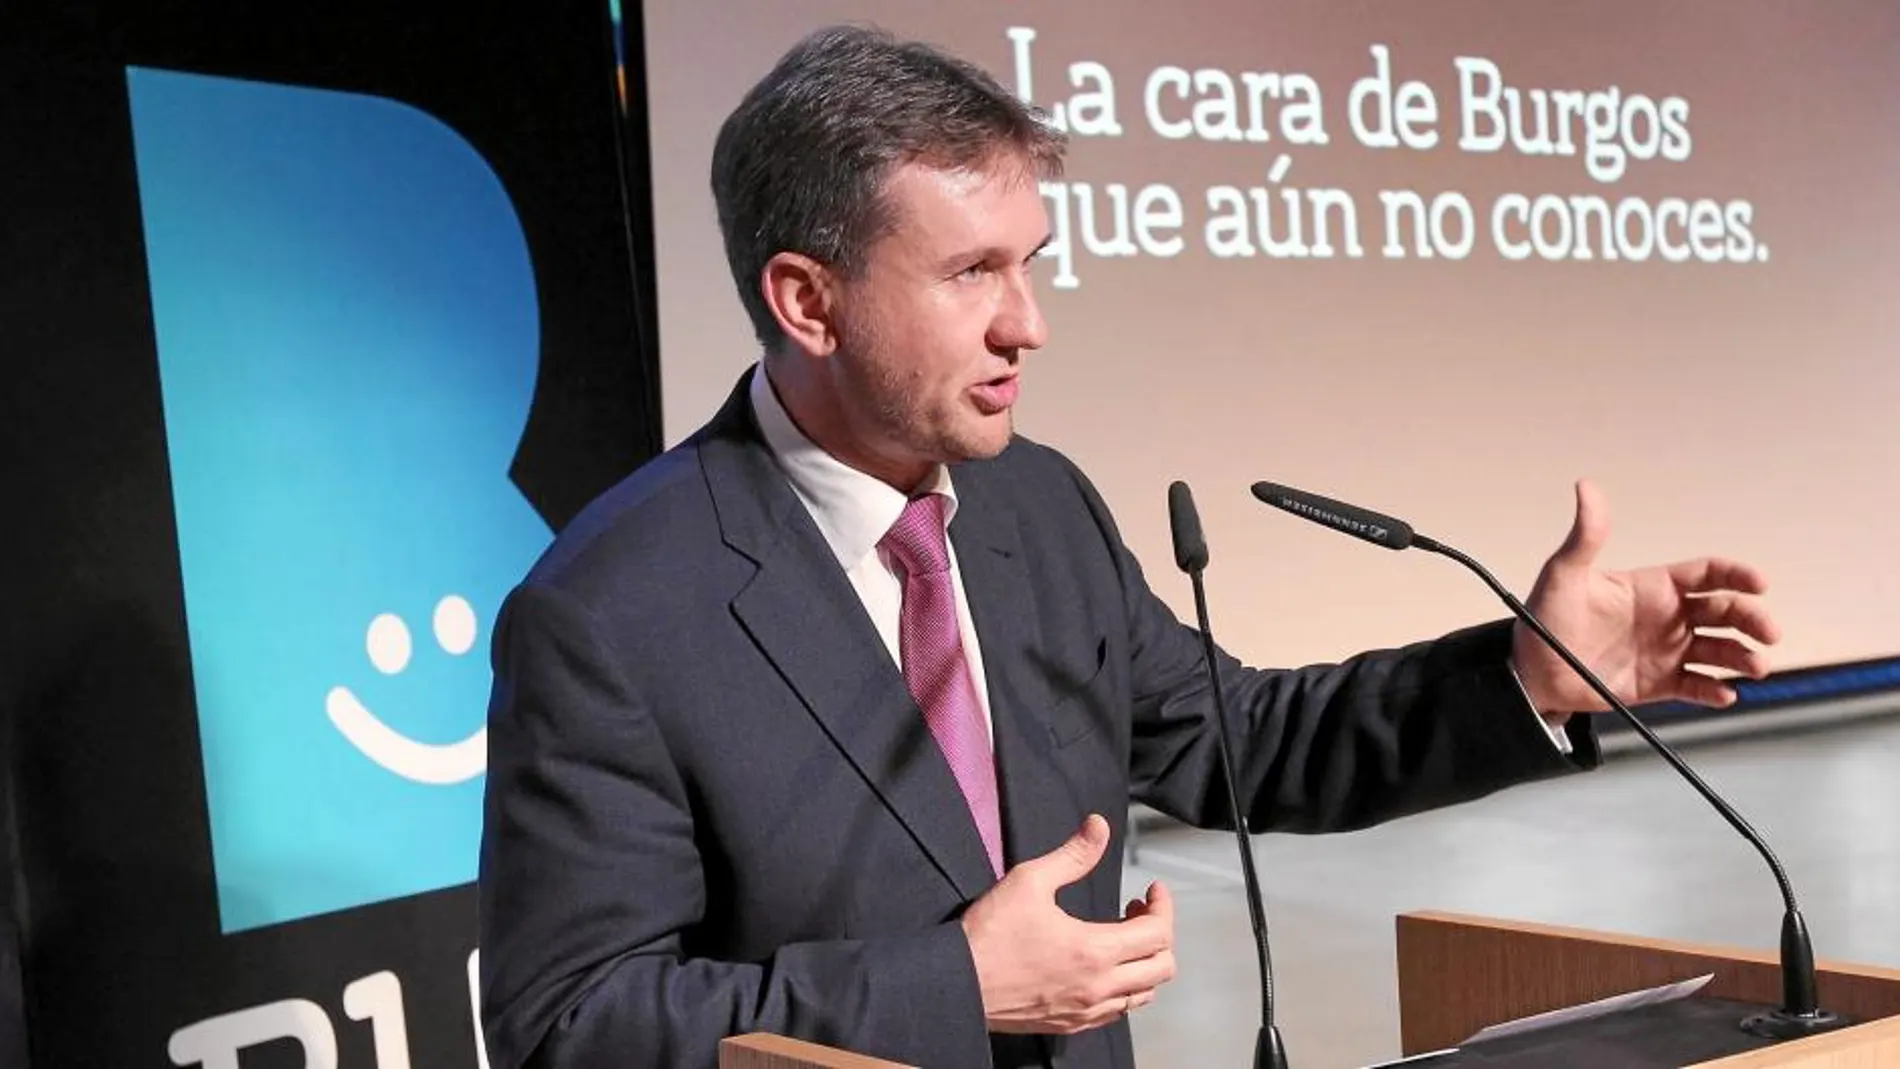 El alcalde de Burgos, Javier Lacalle, en un acto en la promoción de su ciudad y del español